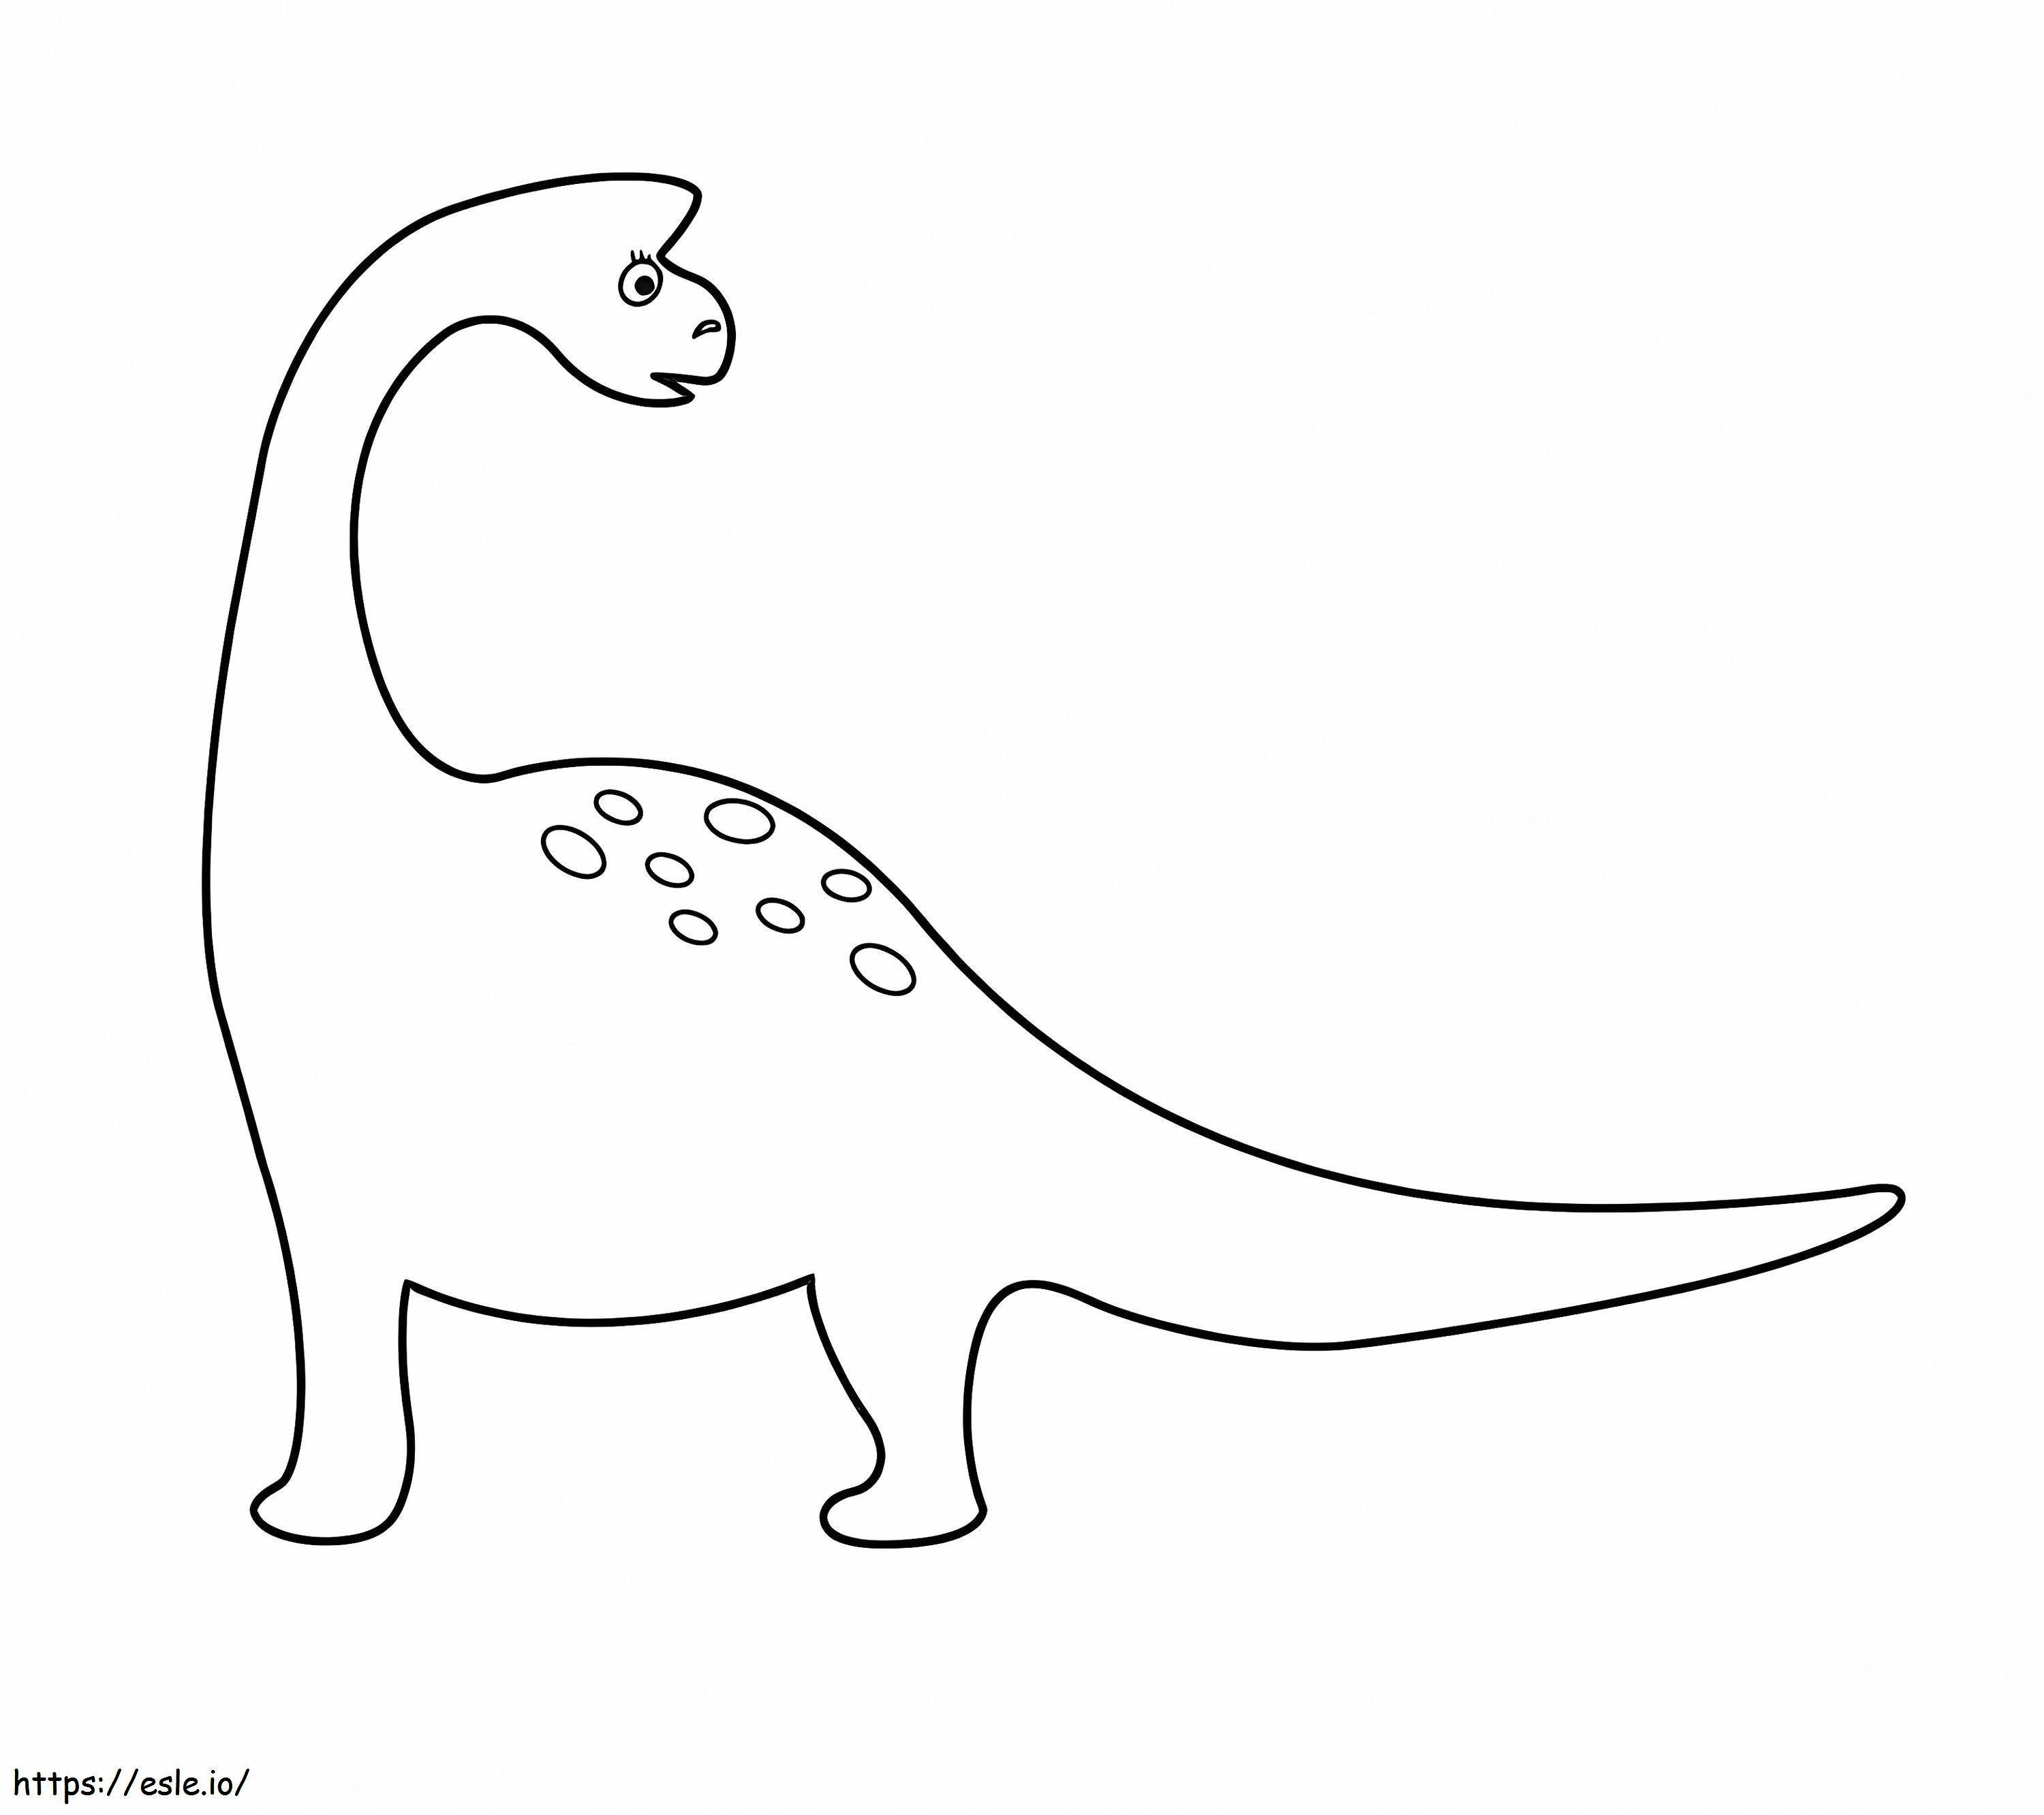 Kleiner Brachiosaurus ausmalbilder